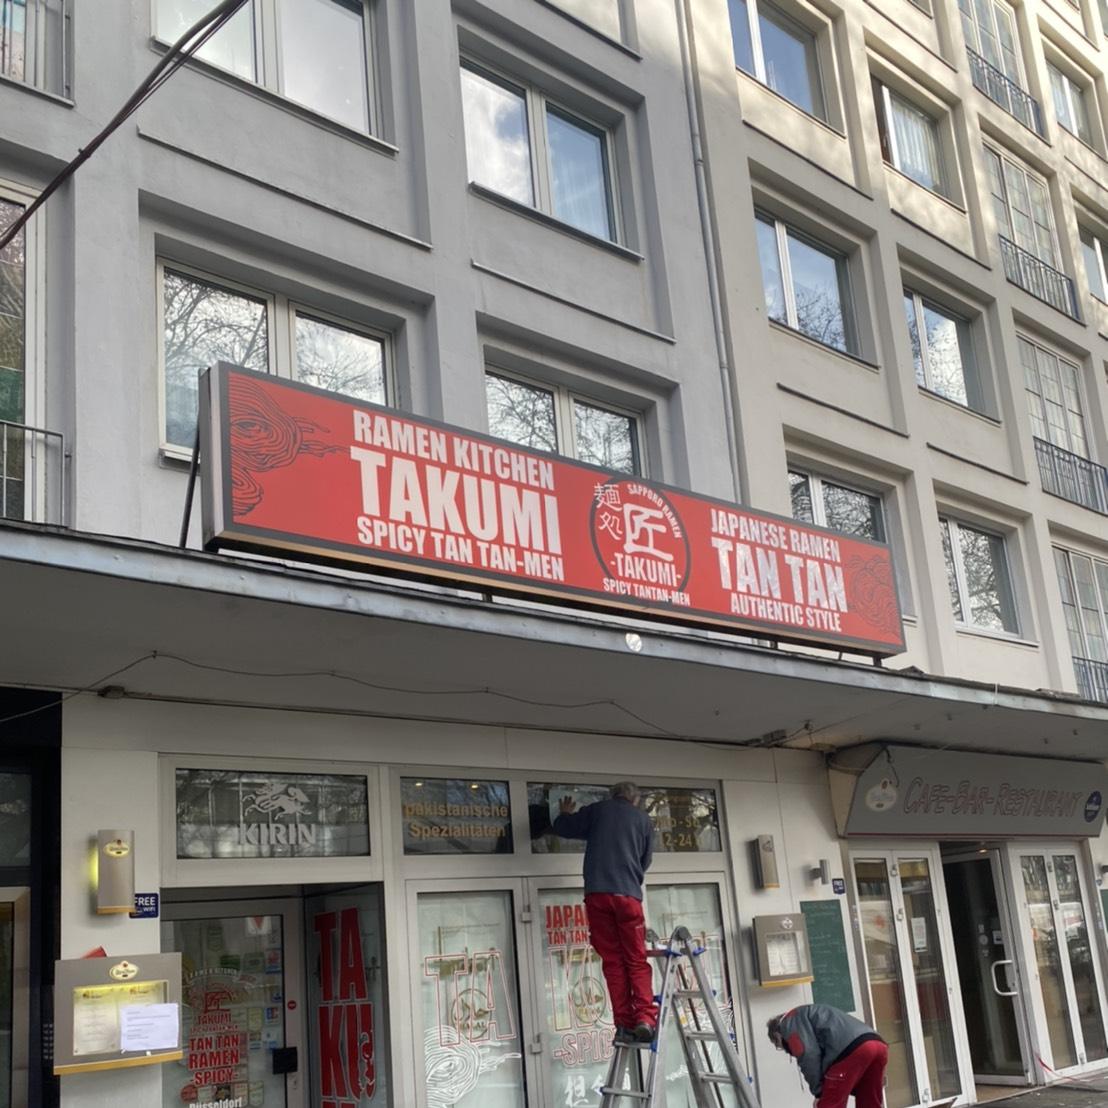 Restaurant "Takumi 6th Spicy Tan Tan Men" in Düsseldorf